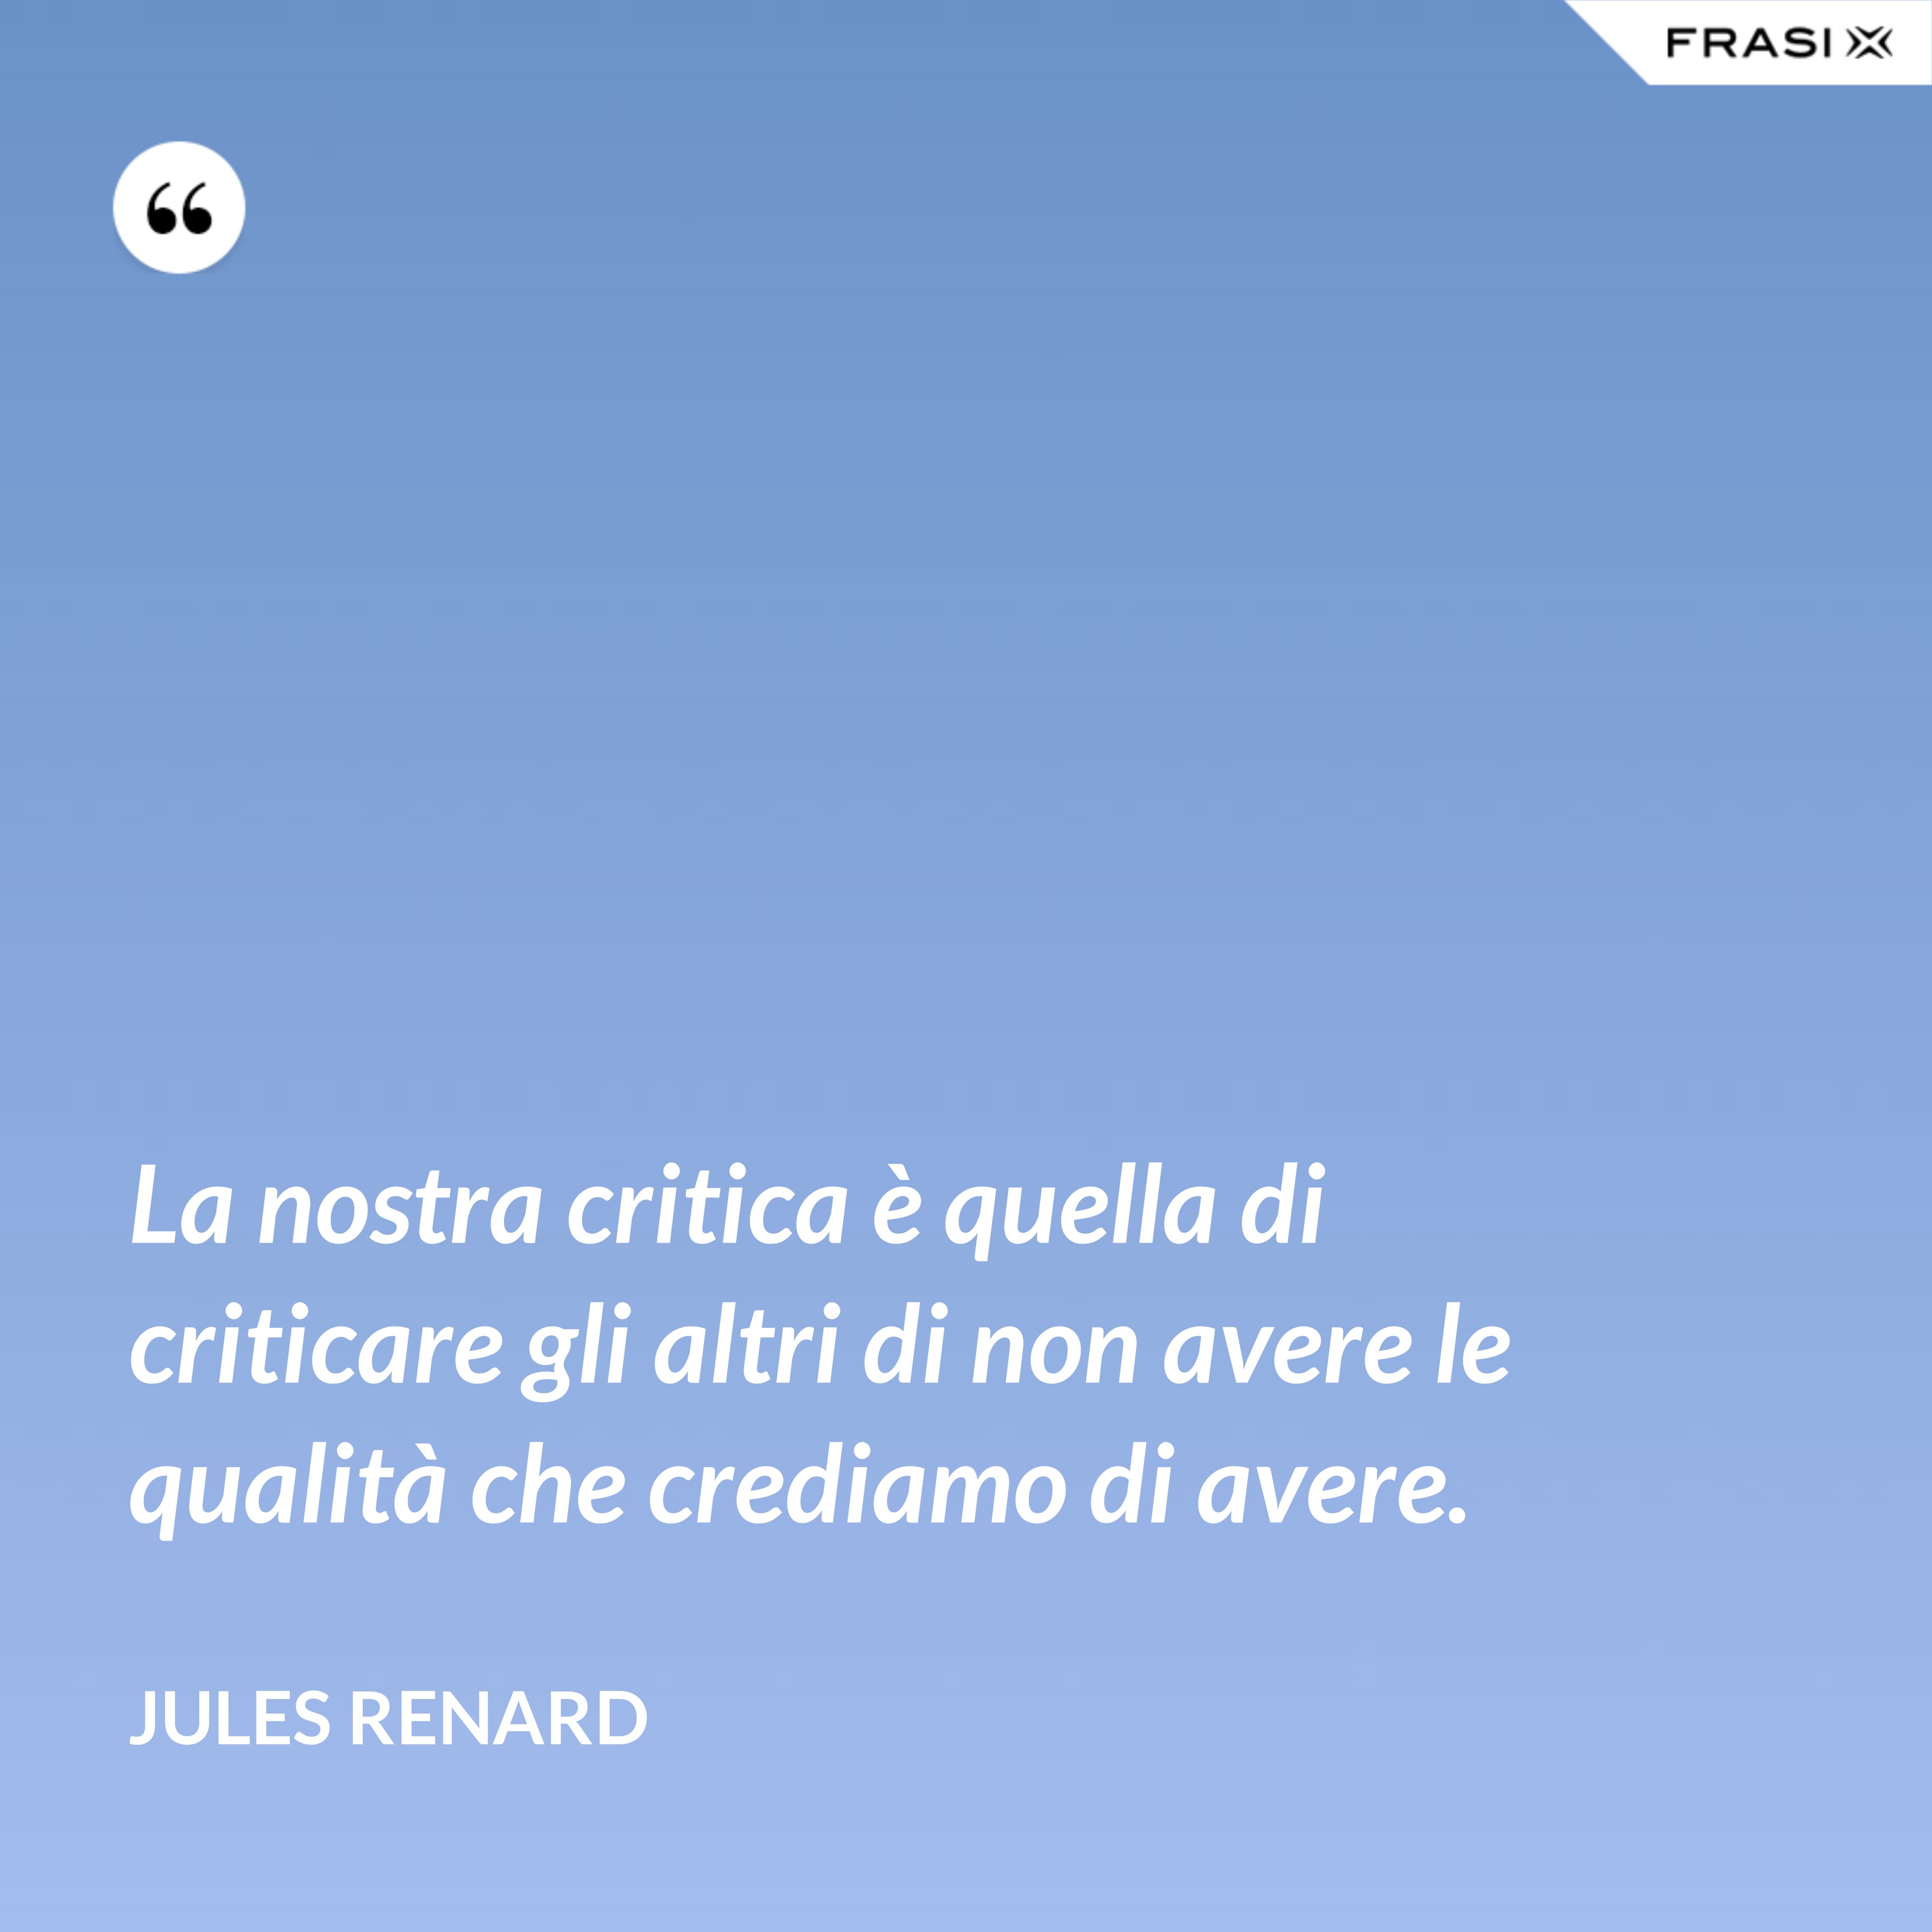 La nostra critica è quella di criticare gli altri di non avere le qualità che crediamo di avere. - Jules Renard